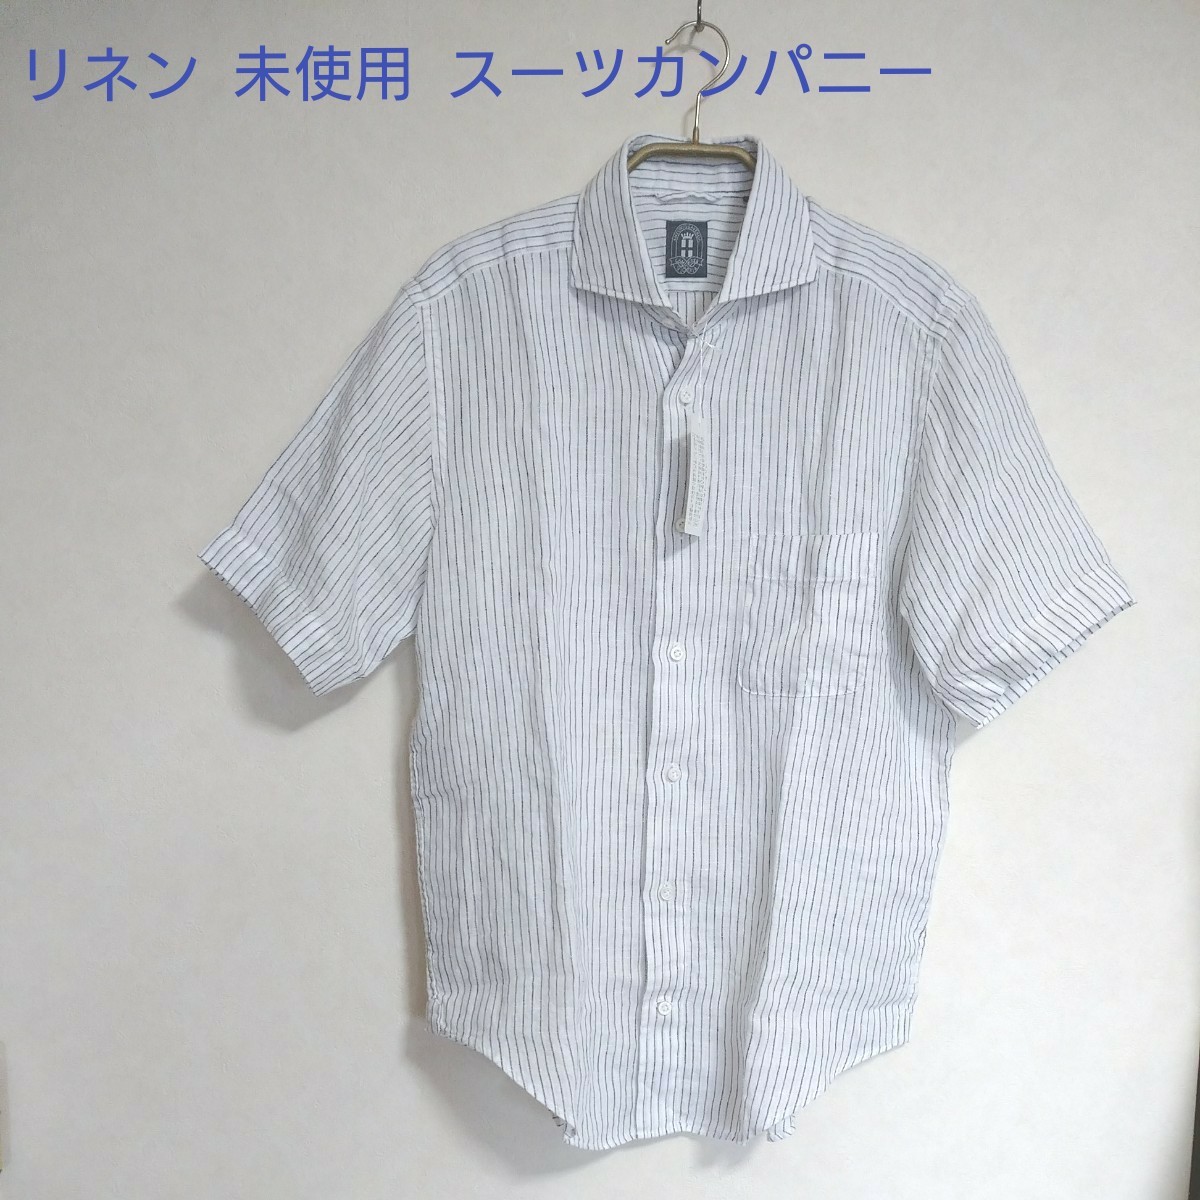 メンズ 半袖シャツ カジュアルシャツ 麻 リネン スーツカンパニー